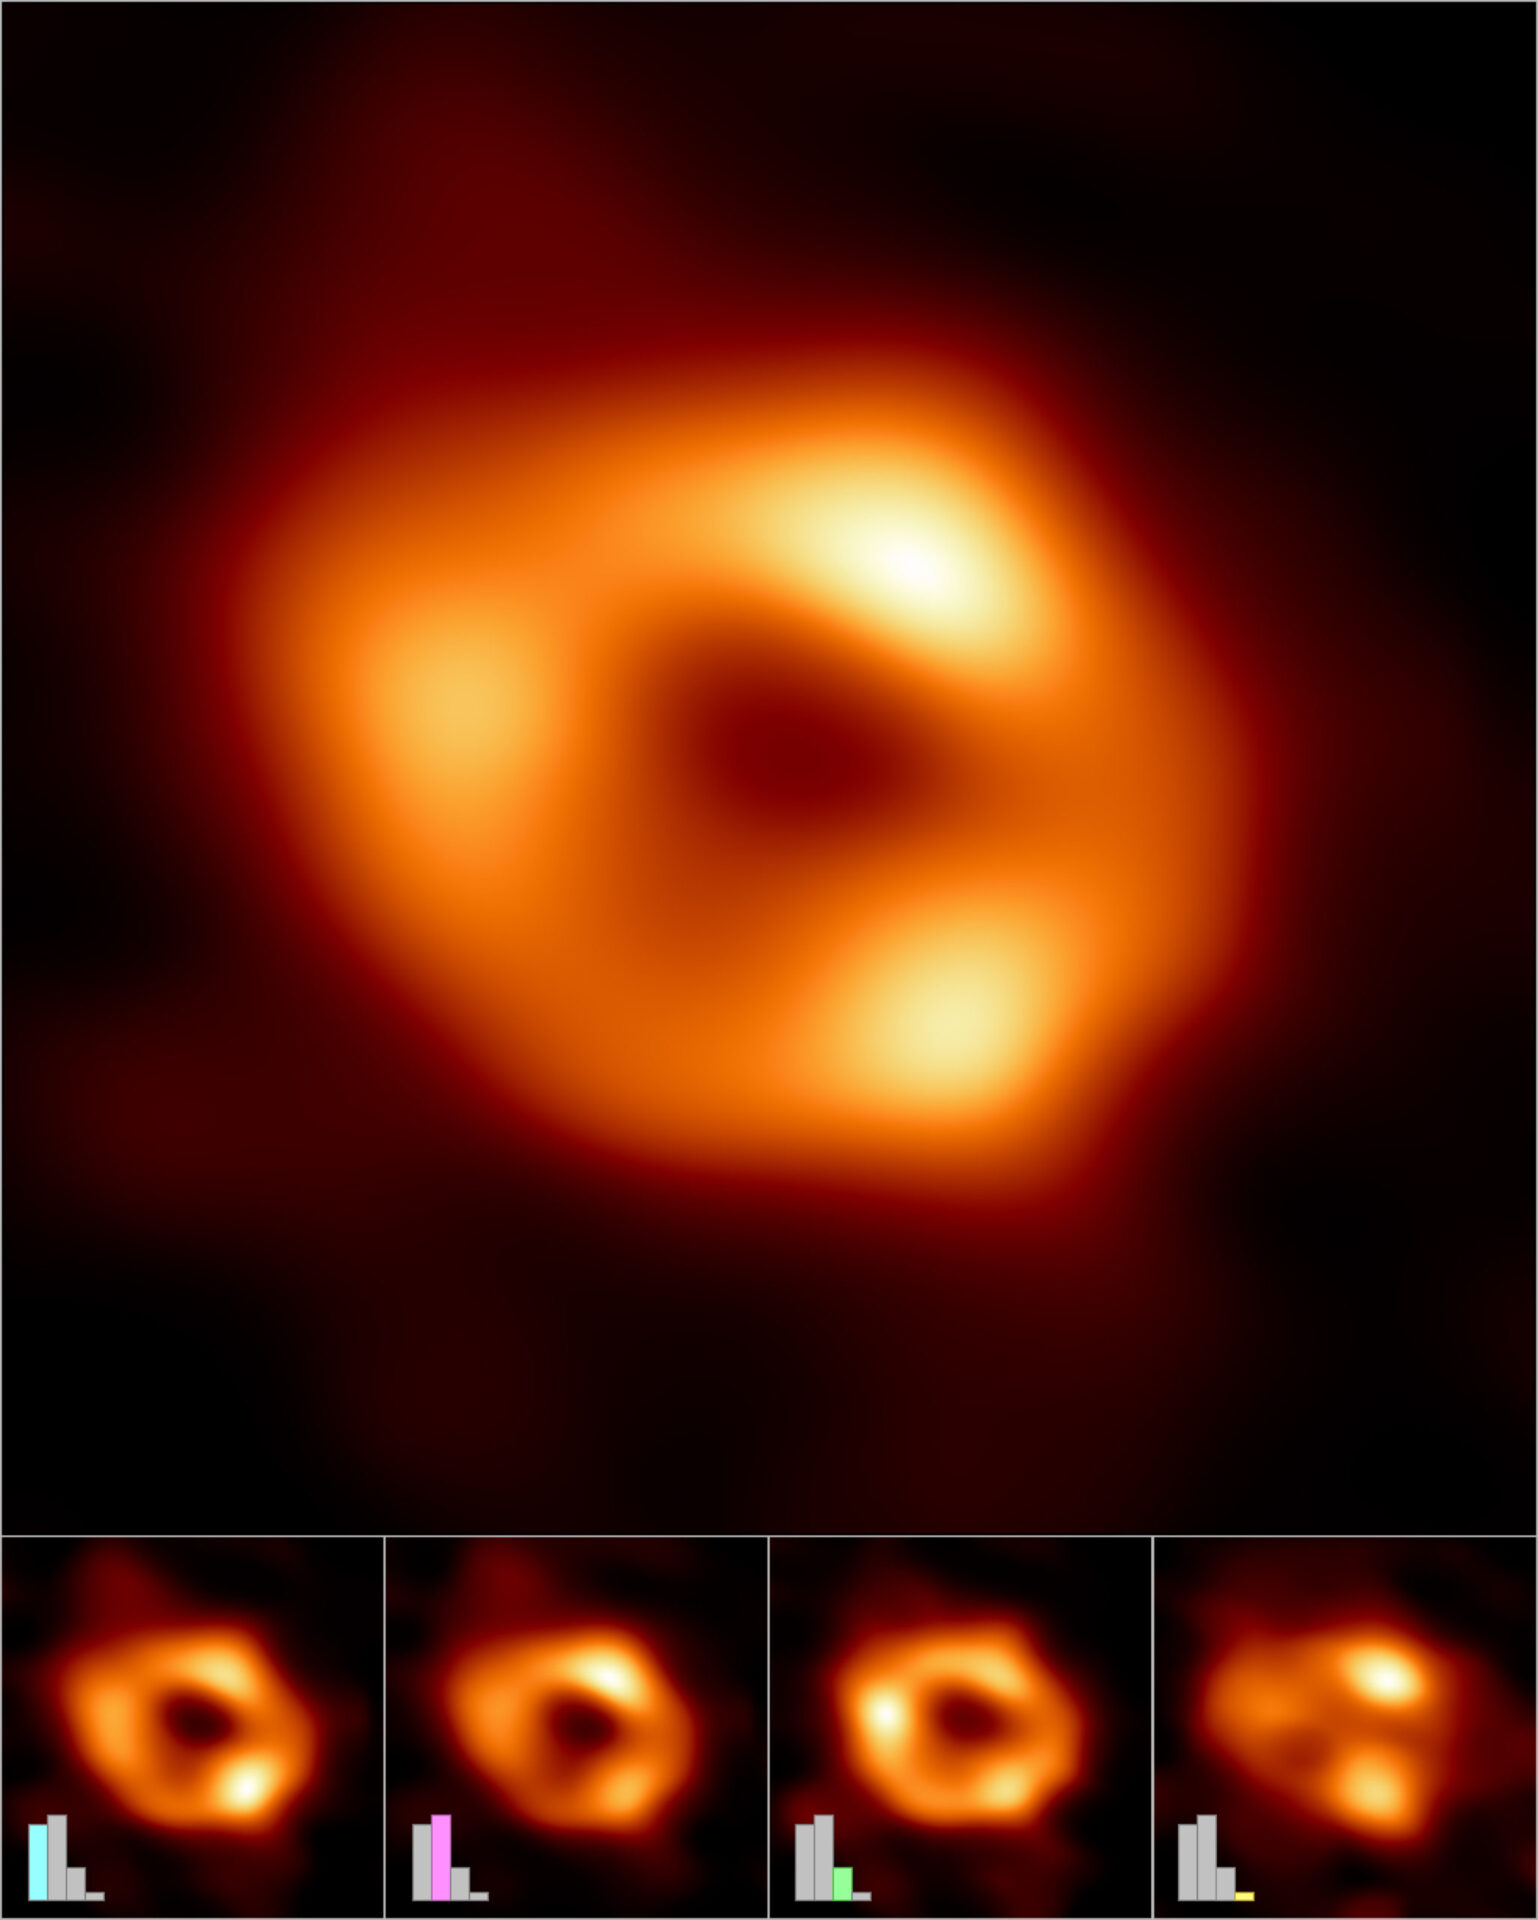 <p>La Colaboración del Telescopio de Horizonte de Eventos (EHT) ha creado una única imagen (parte superior) del agujero negro supermasivo del centro de nuestra galaxia, llamado Sagitario A* (o Sgr A* para abreviar), combinando imágenes extraídas de las observaciones del EHT.<br />
La imagen principal se produjo promediando miles de imágenes creadas con diferentes métodos computacionales, todos los cuales se ajustan con precisión a los datos del EHT. Esta imagen promediada conserva las características más frecuentes en las distintas imágenes y suprime las que aparecen con menor frecuencia.<br />
Además, las imágenes pueden agruparse en cuatro grupos en función de las características en común. En la fila inferior se muestra una imagen promediada y representativa de cada uno de los cuatro grupos. Tres de los grupos muestran una estructura anular, pero con una distribución diferente del brillo alrededor del anillo. El cuarto grupo contiene imágenes que también se ajustan a los datos pero que no parecen anillos.<br />
Los diagramas de barras muestran el número relativo de imágenes que pertenecen a cada grupo. Miles de imágenes pertenecen a cada uno de los tres primeros grupos, mientras que el cuarto y más pequeño contiene sólo cientos de imágenes. Las alturas de las barras indican el 